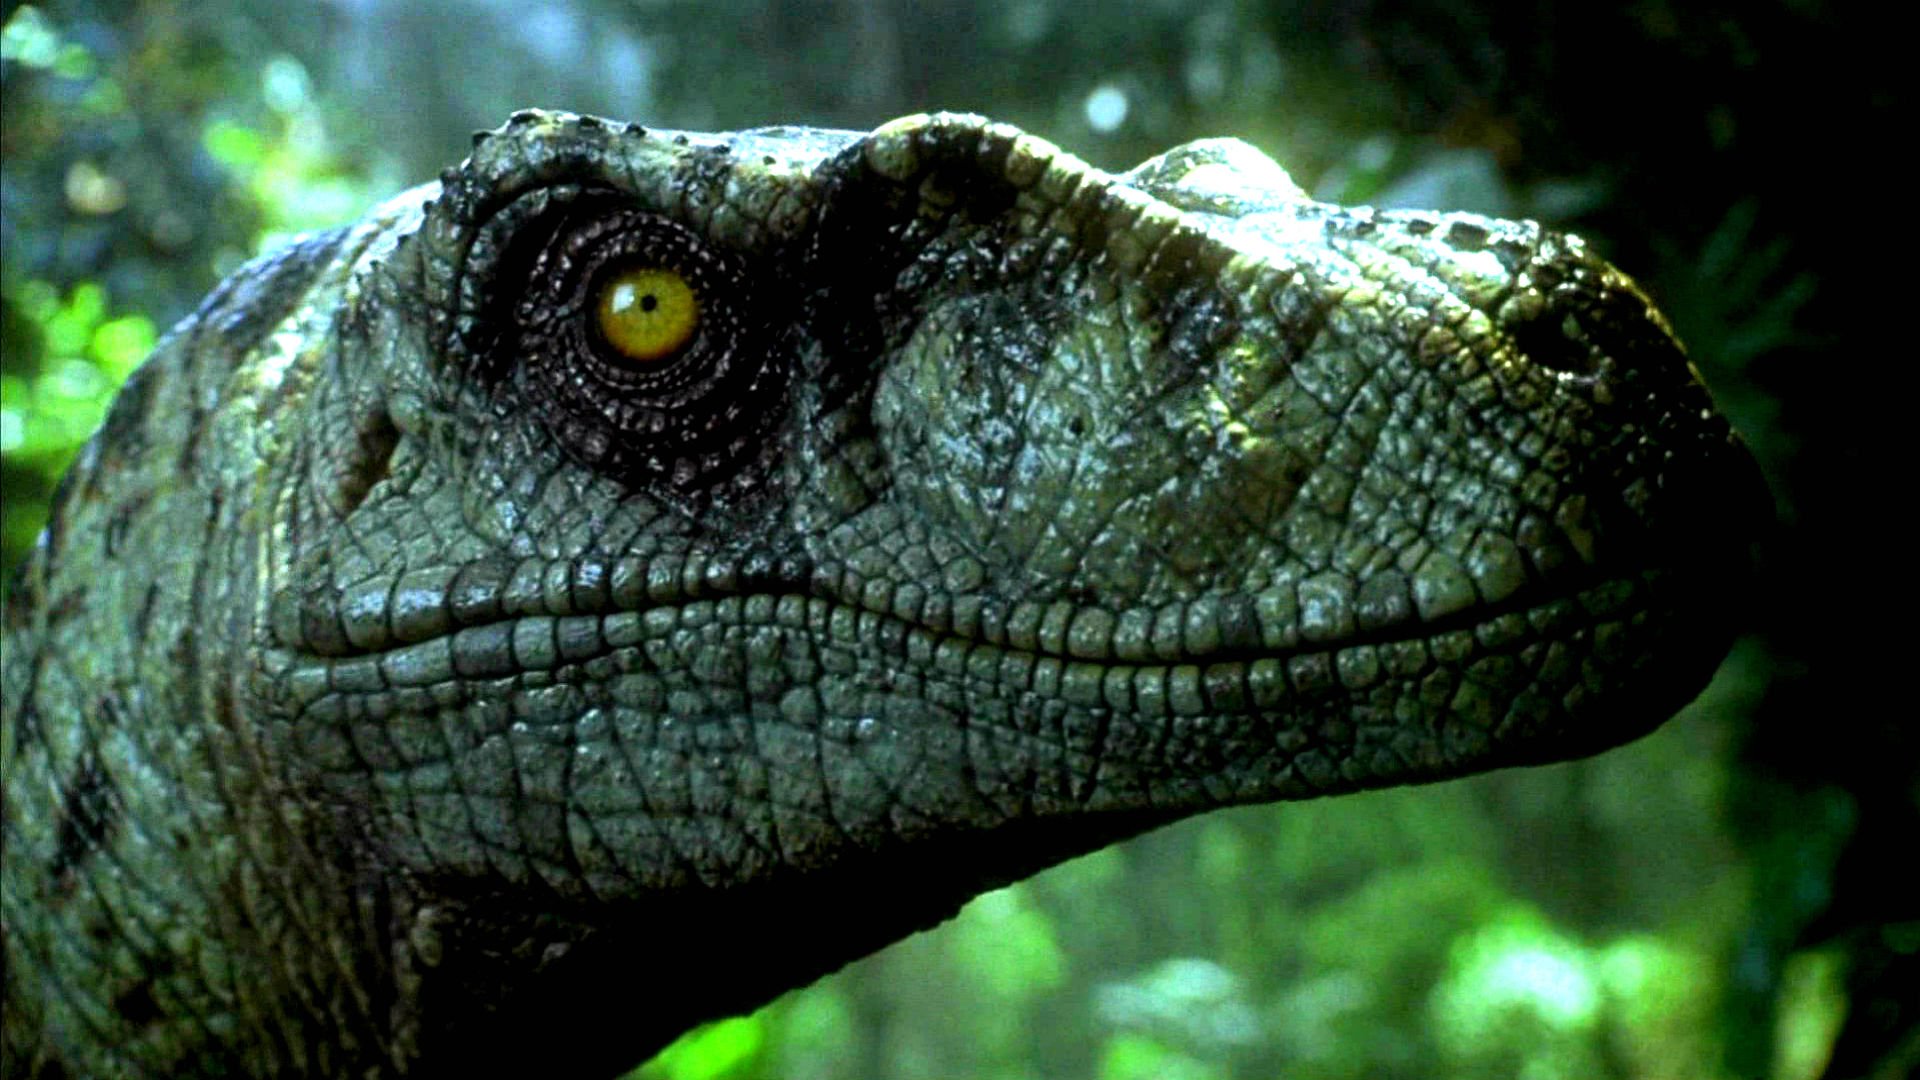 Jurassic Park Adventure Sci Fi Fantasy Dinosaur Movie Film Wallpaper